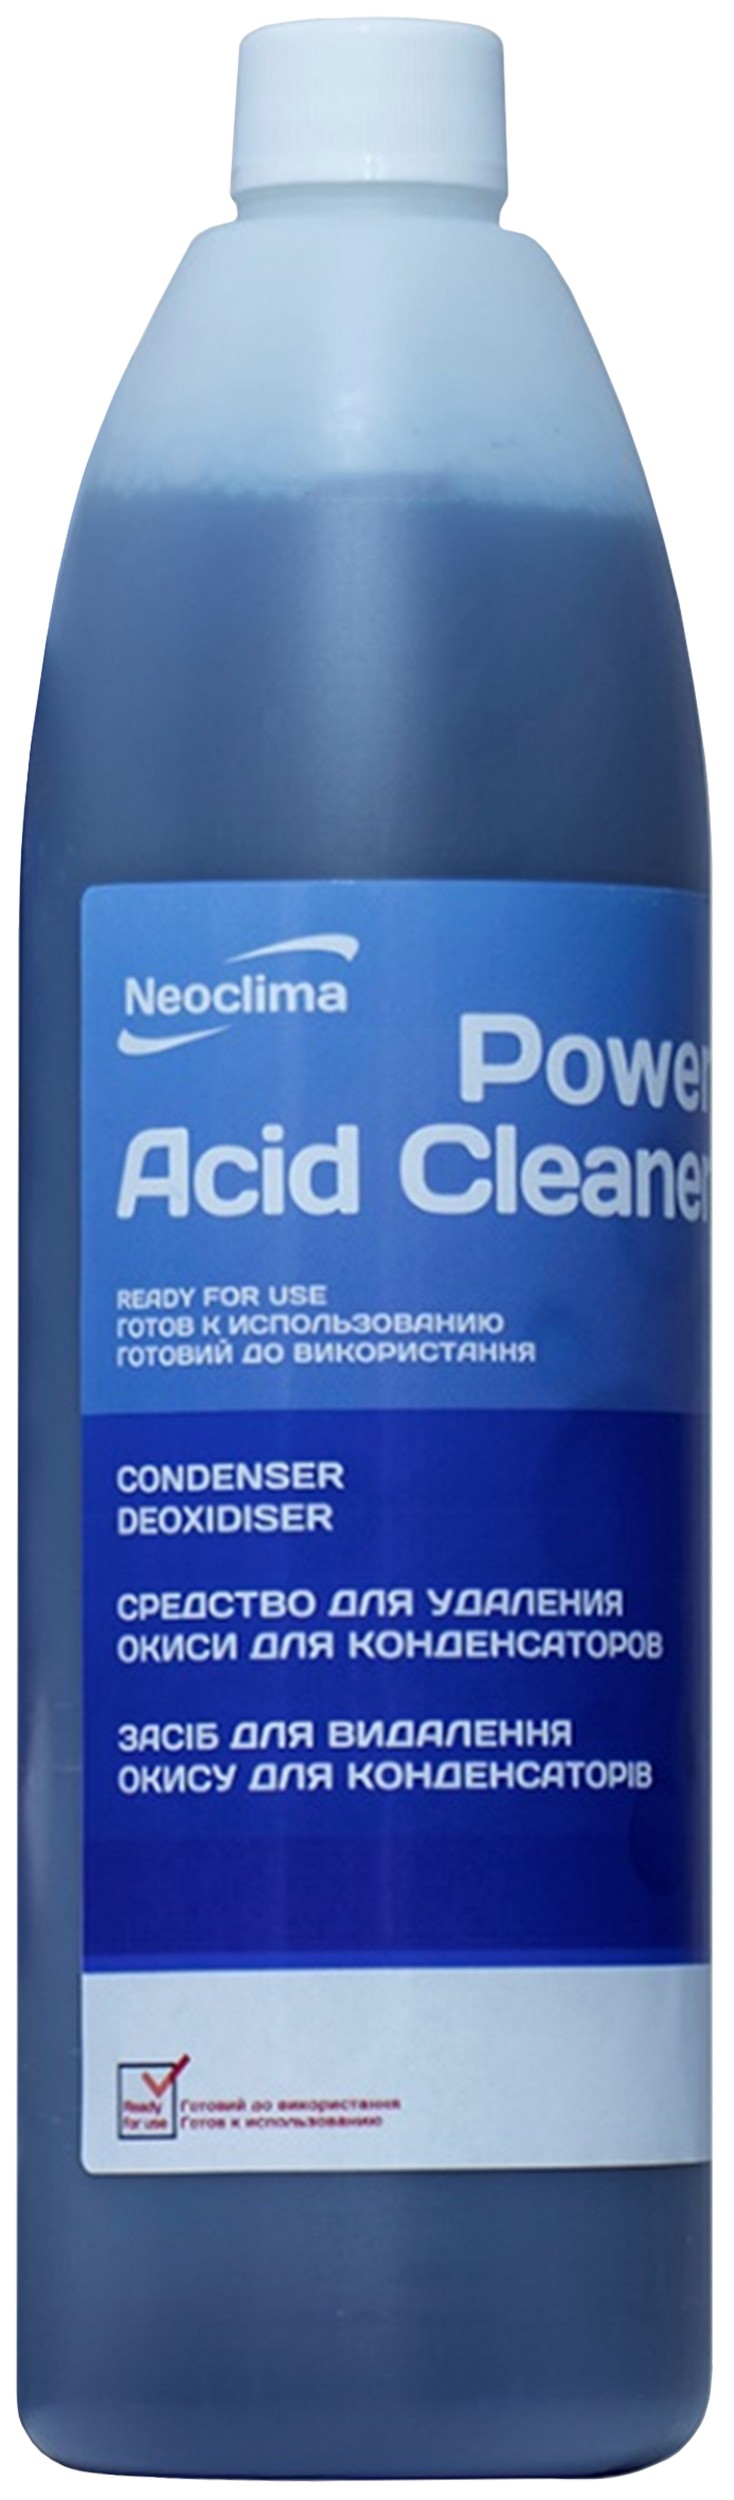 Цена очиститель для кондиционеров Neoclima Power Acid Cleaner 1 л, спрей в Киеве